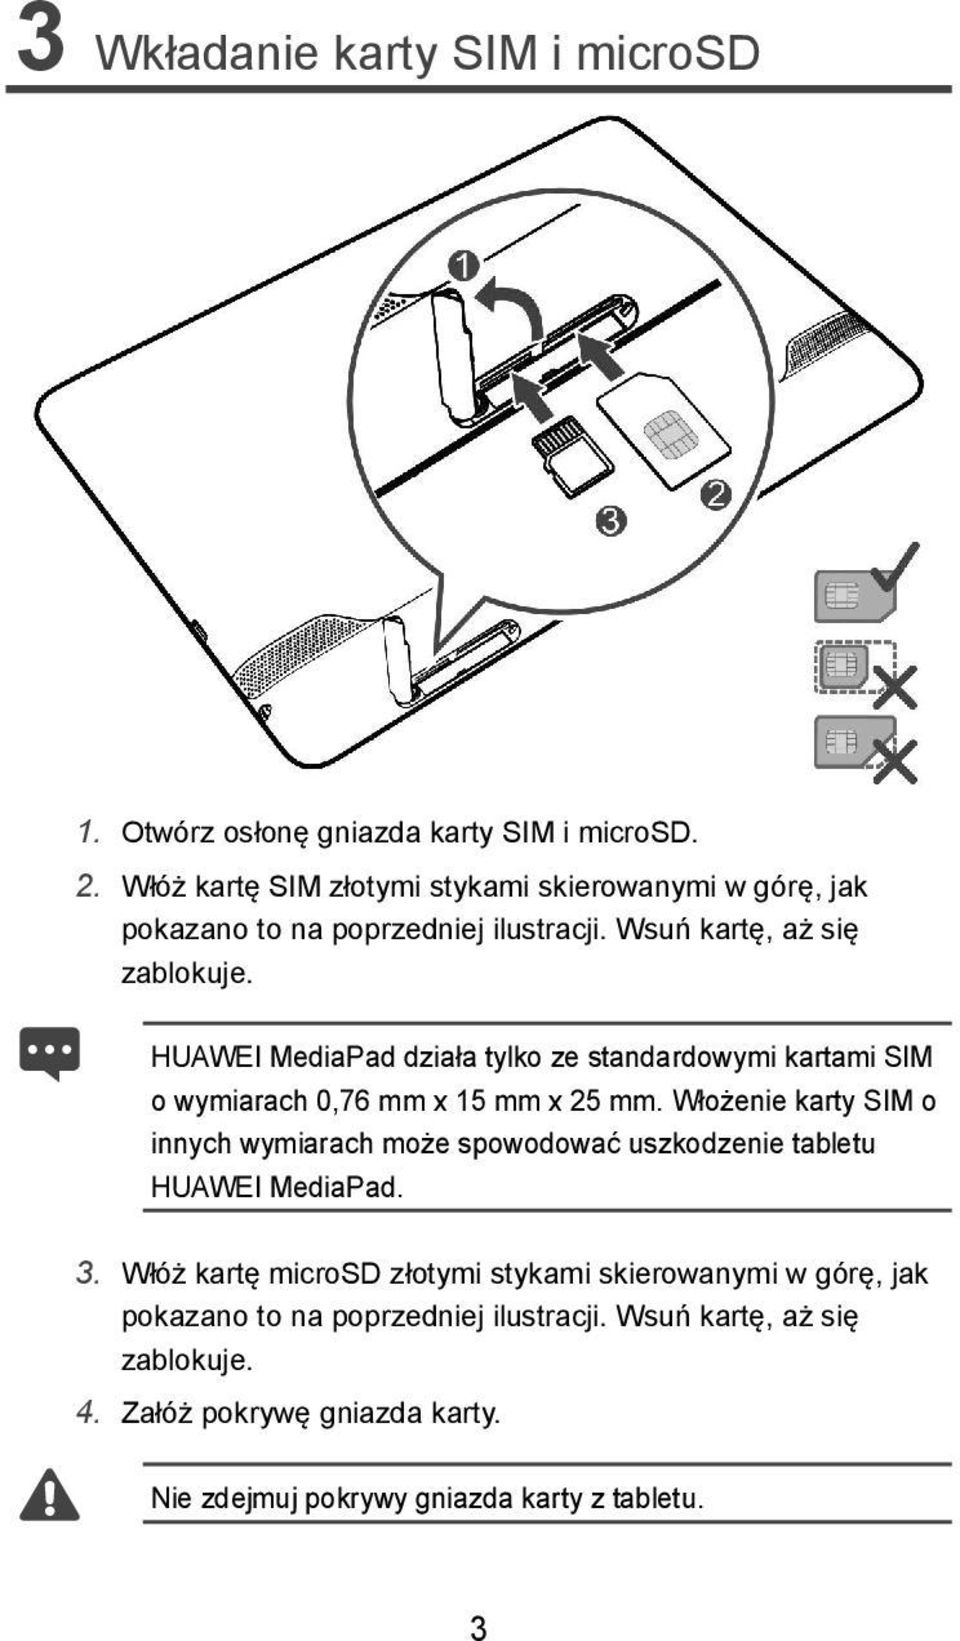 HUAWEI MediaPad działa tylko ze standardowymi kartami SIM o wymiarach 0,76 mm x 15 mm x 25 mm.